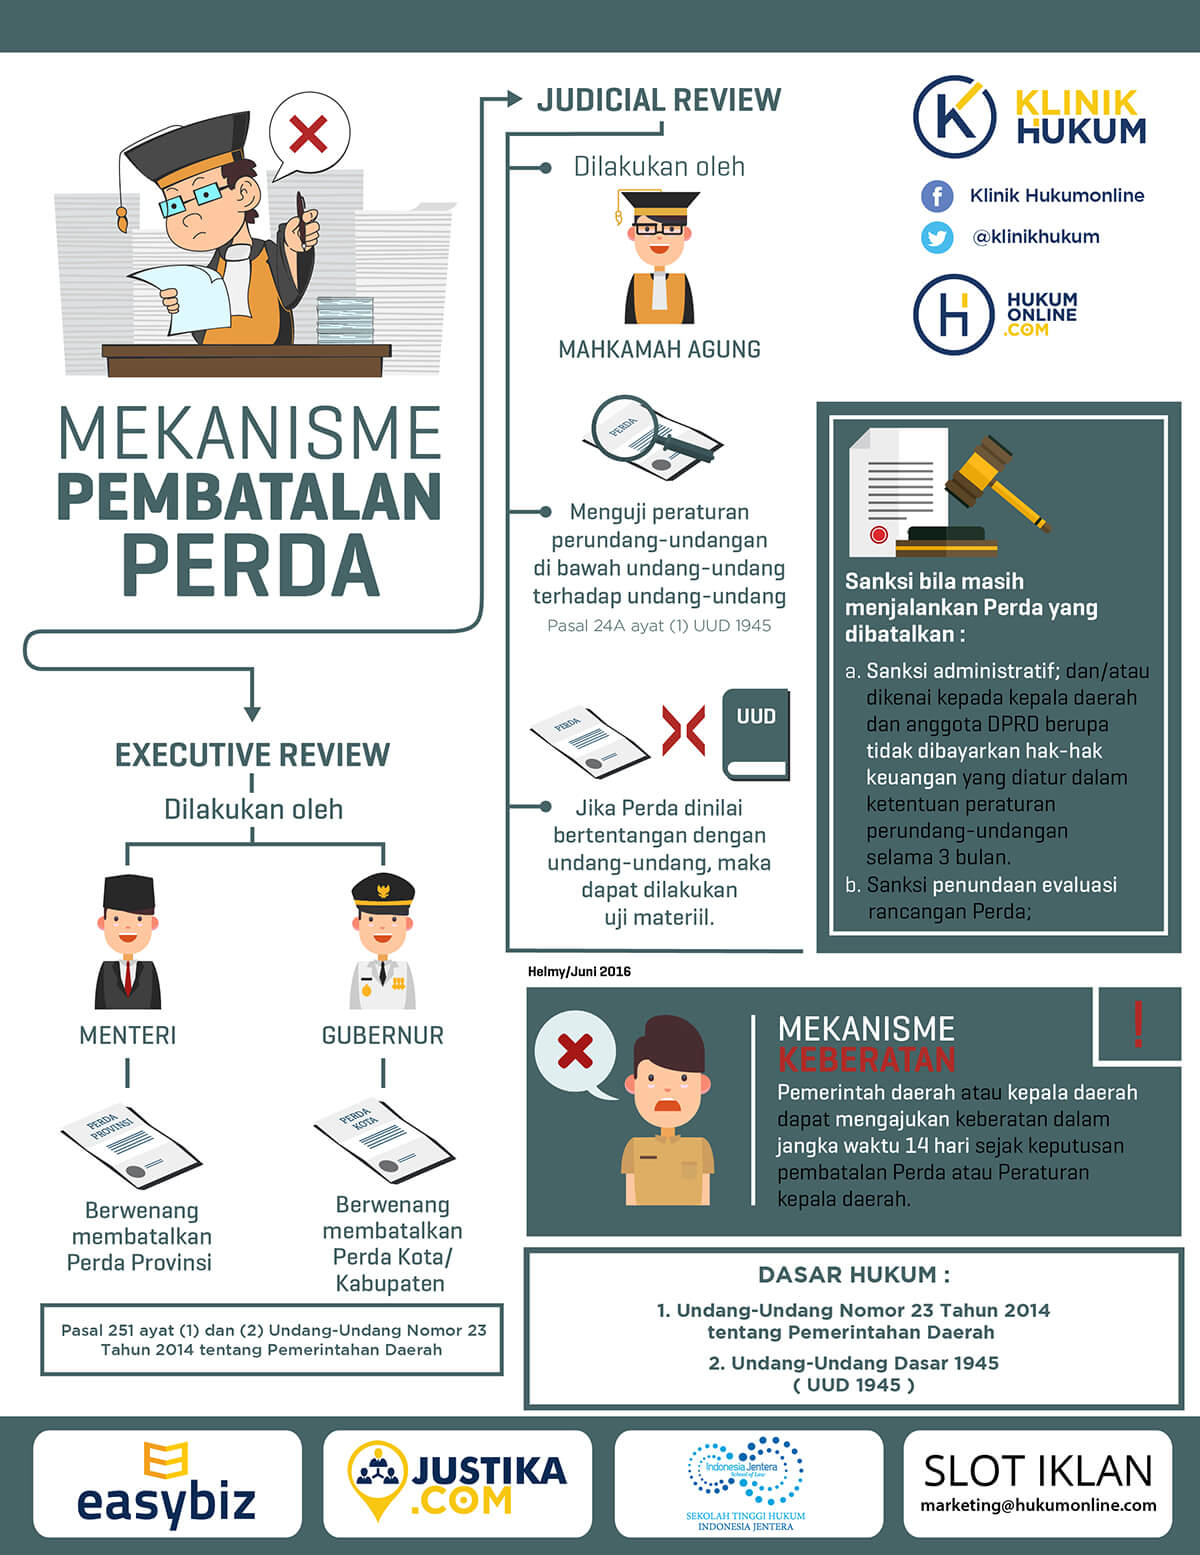 Hierarki peraturan perundang-undangan di indonesia yang paling tinggi adalah